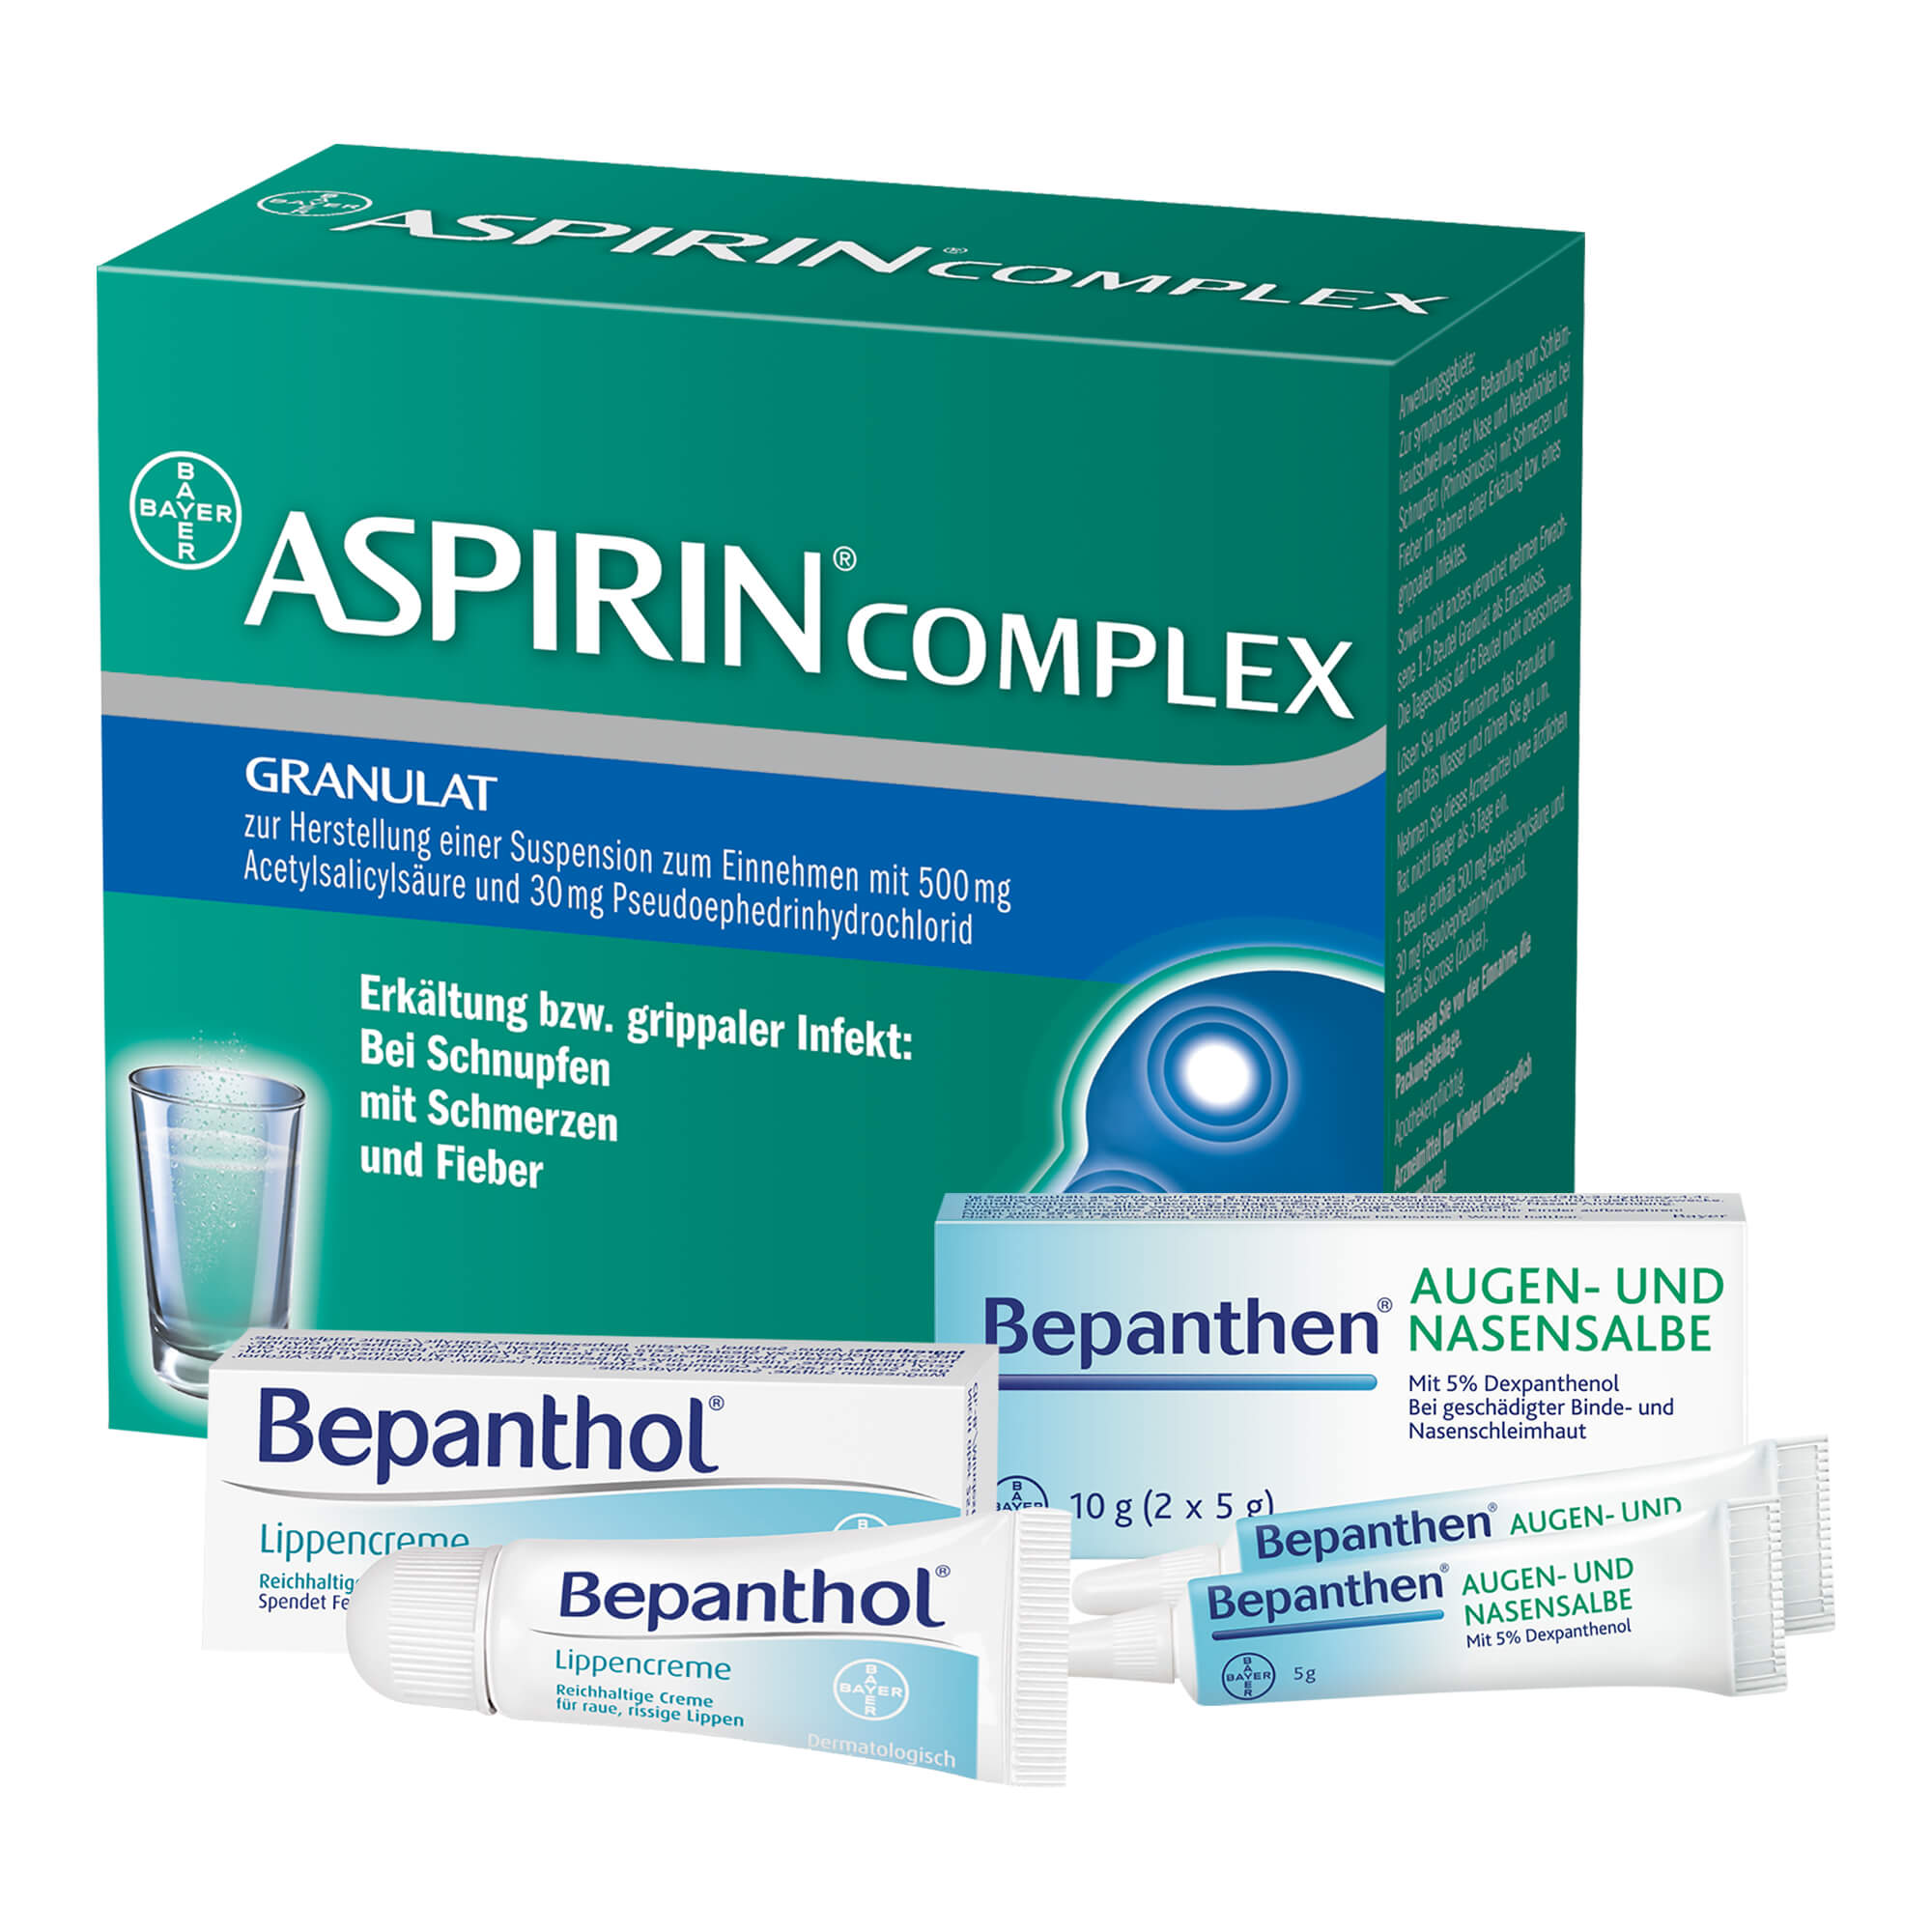 Mit 20 Aspirin Complex Beutel mit Granulat, 7,5 g Bepanthol Lippencreme und 10 g Bepanthen Augen- und Nasensalbe.